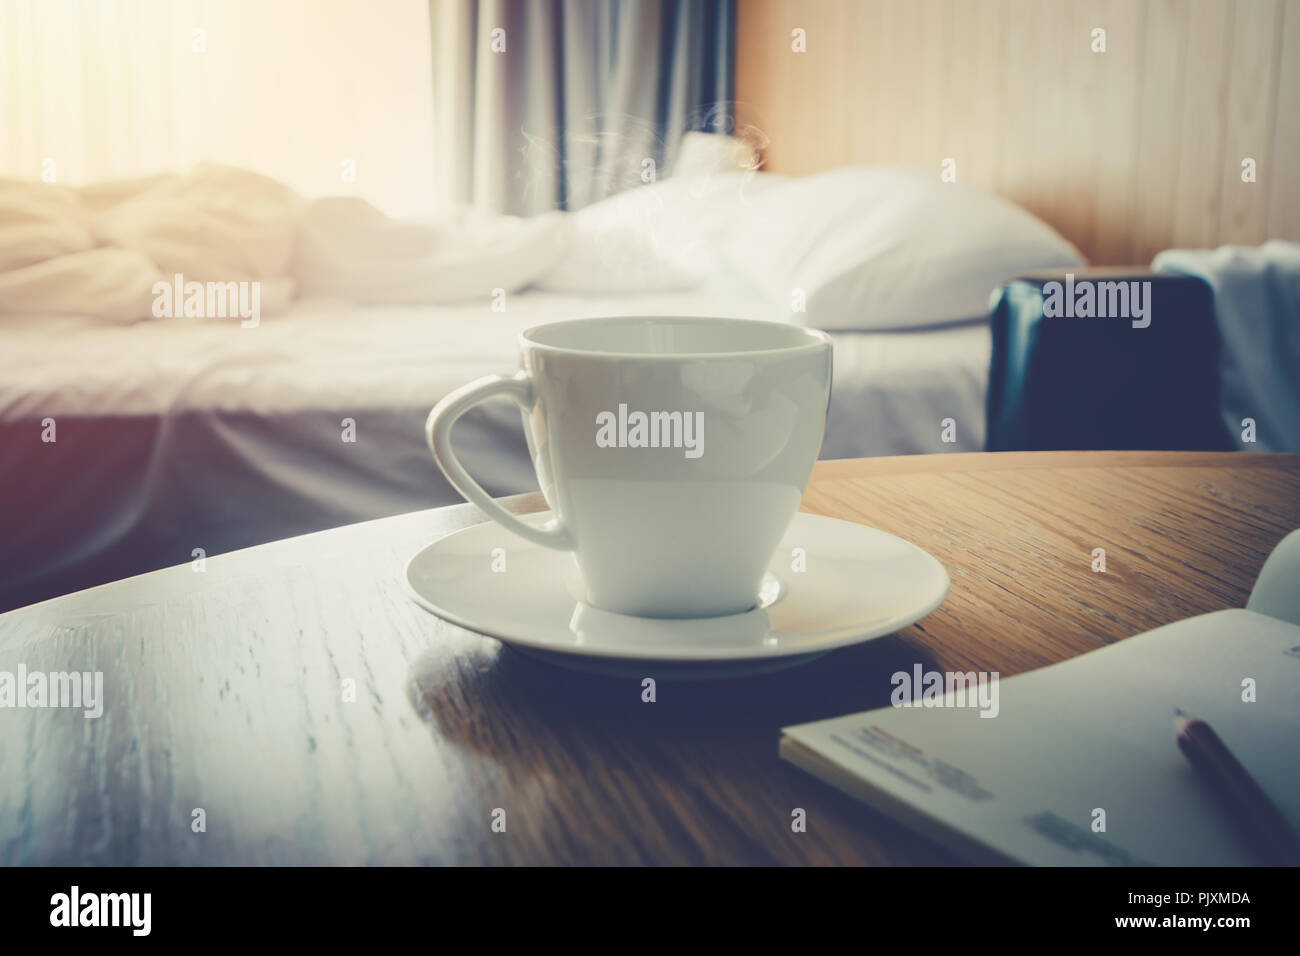 Kaffeetasse auf hölzernen Tisch Morgen Kaffee im Bett Zimmer zum Aufwachen leben - Warme vintage Tone Stockfoto